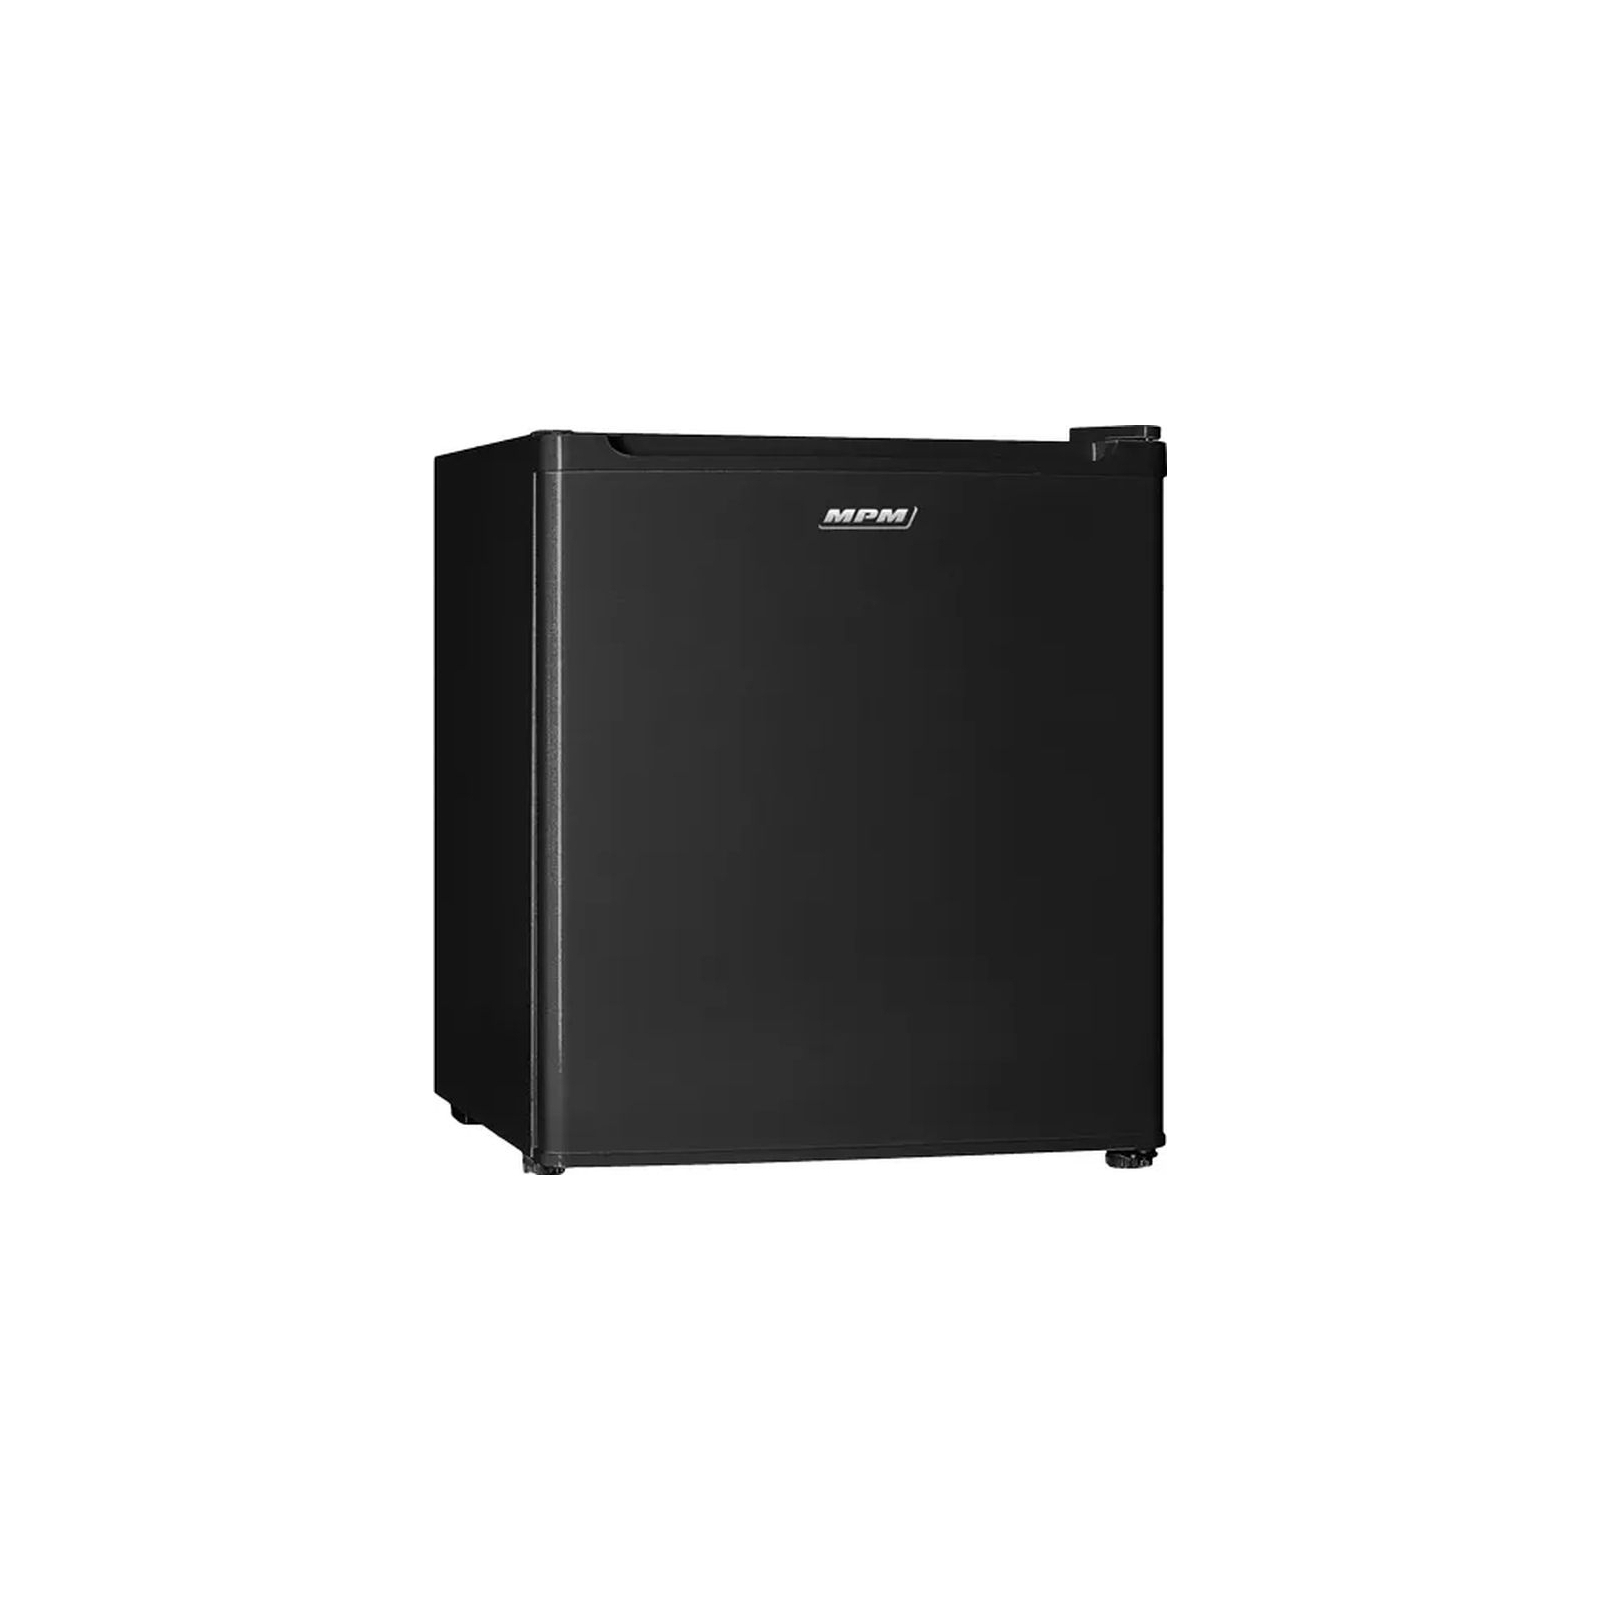 Холодильник MPM MPM-46-CJ-02/Е